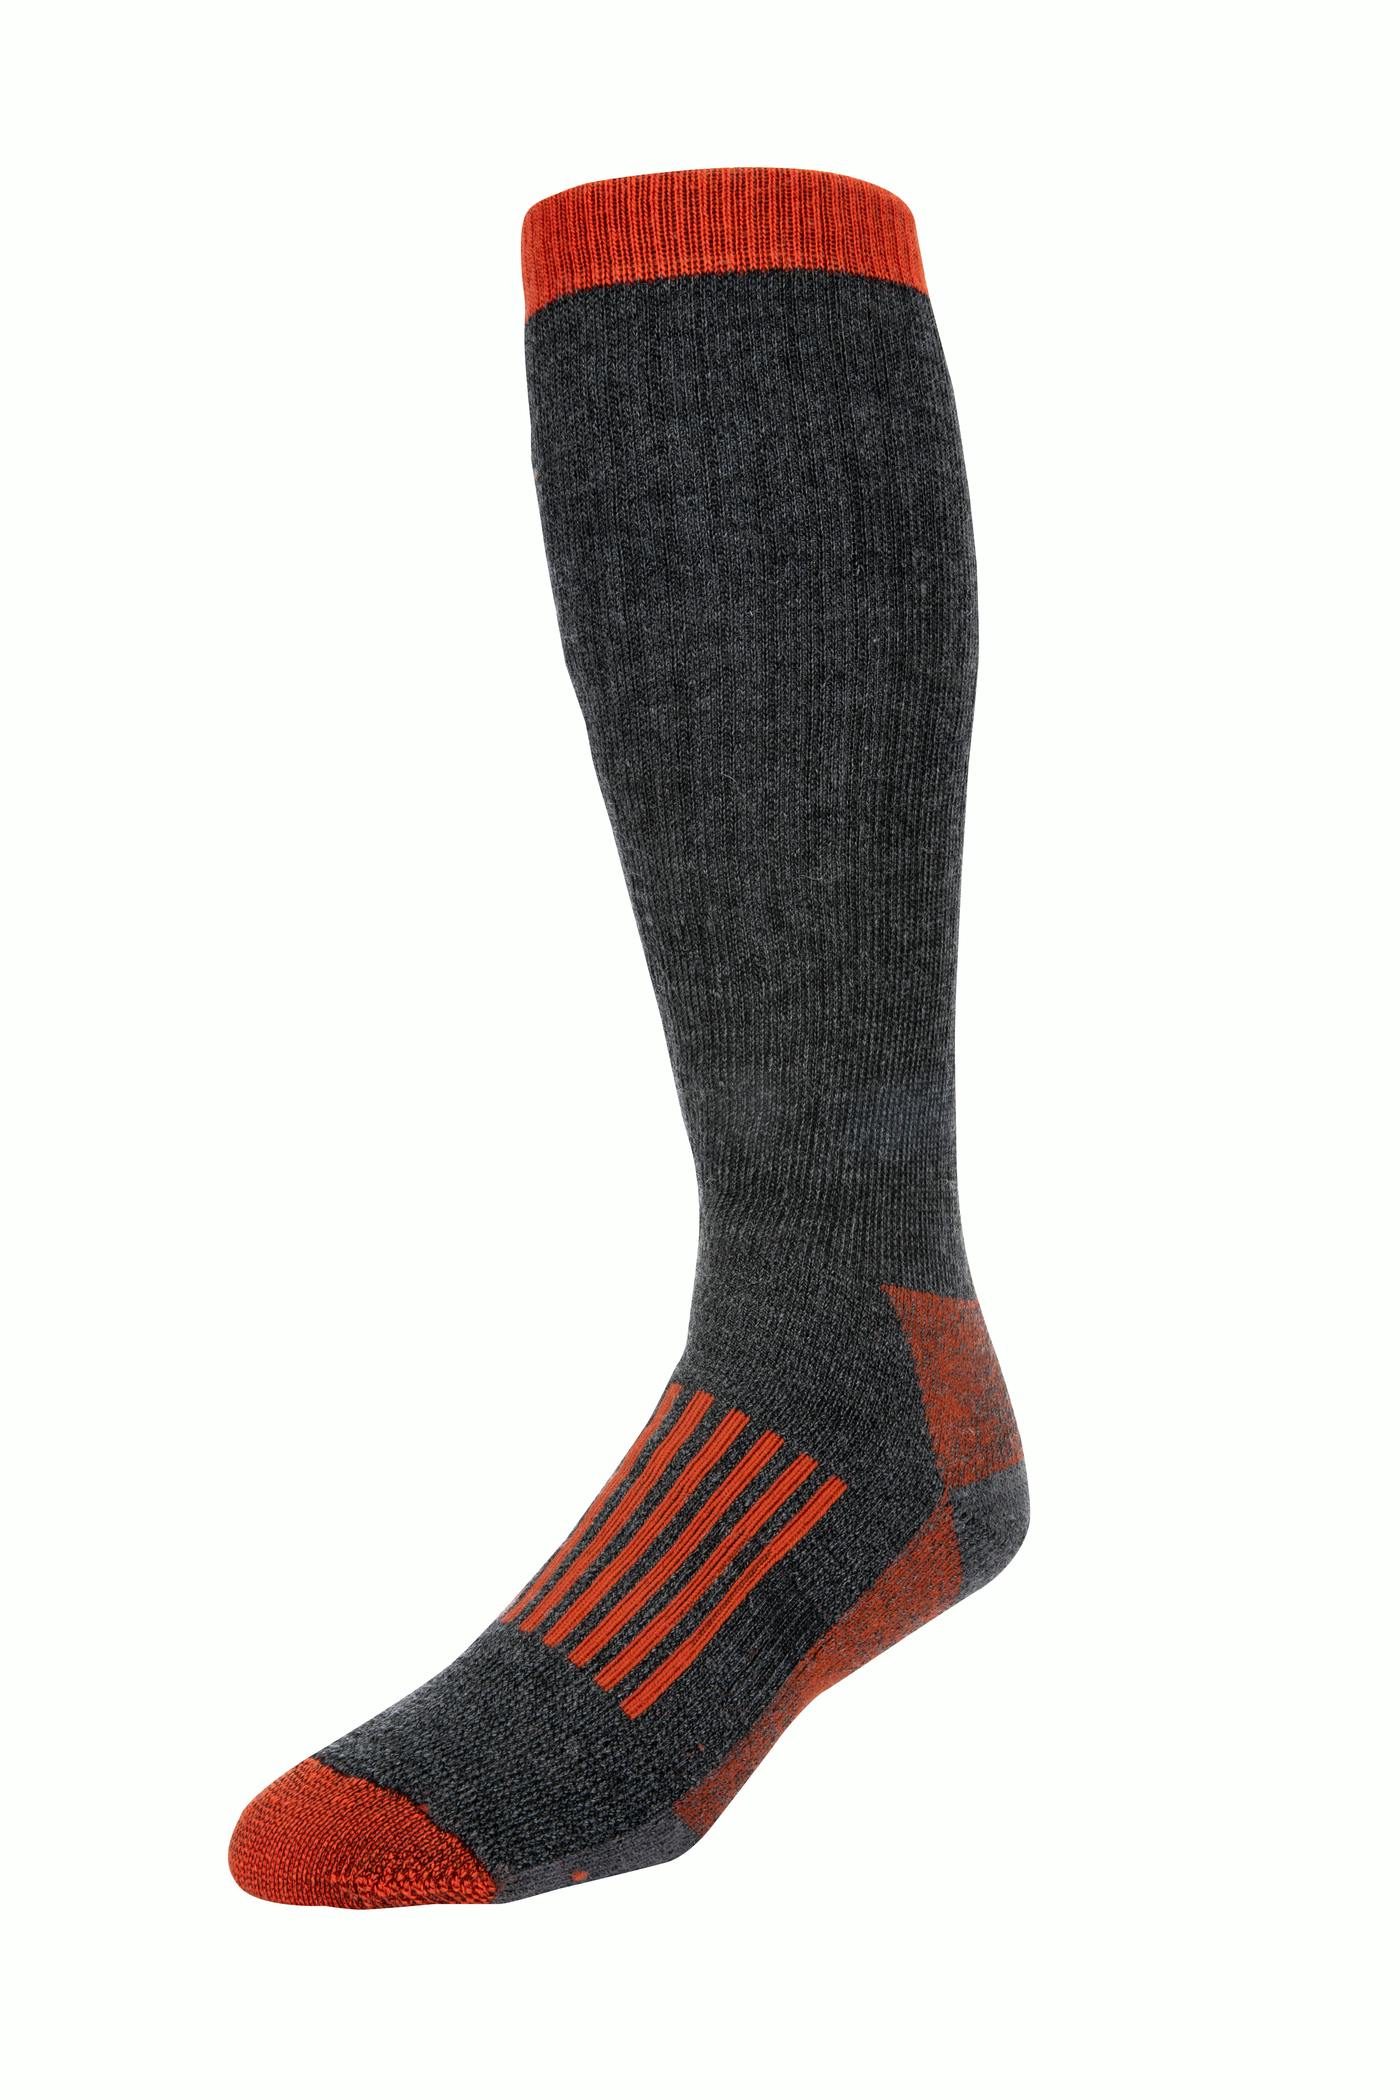 Simms Men's Merino Thermal OTC Sock